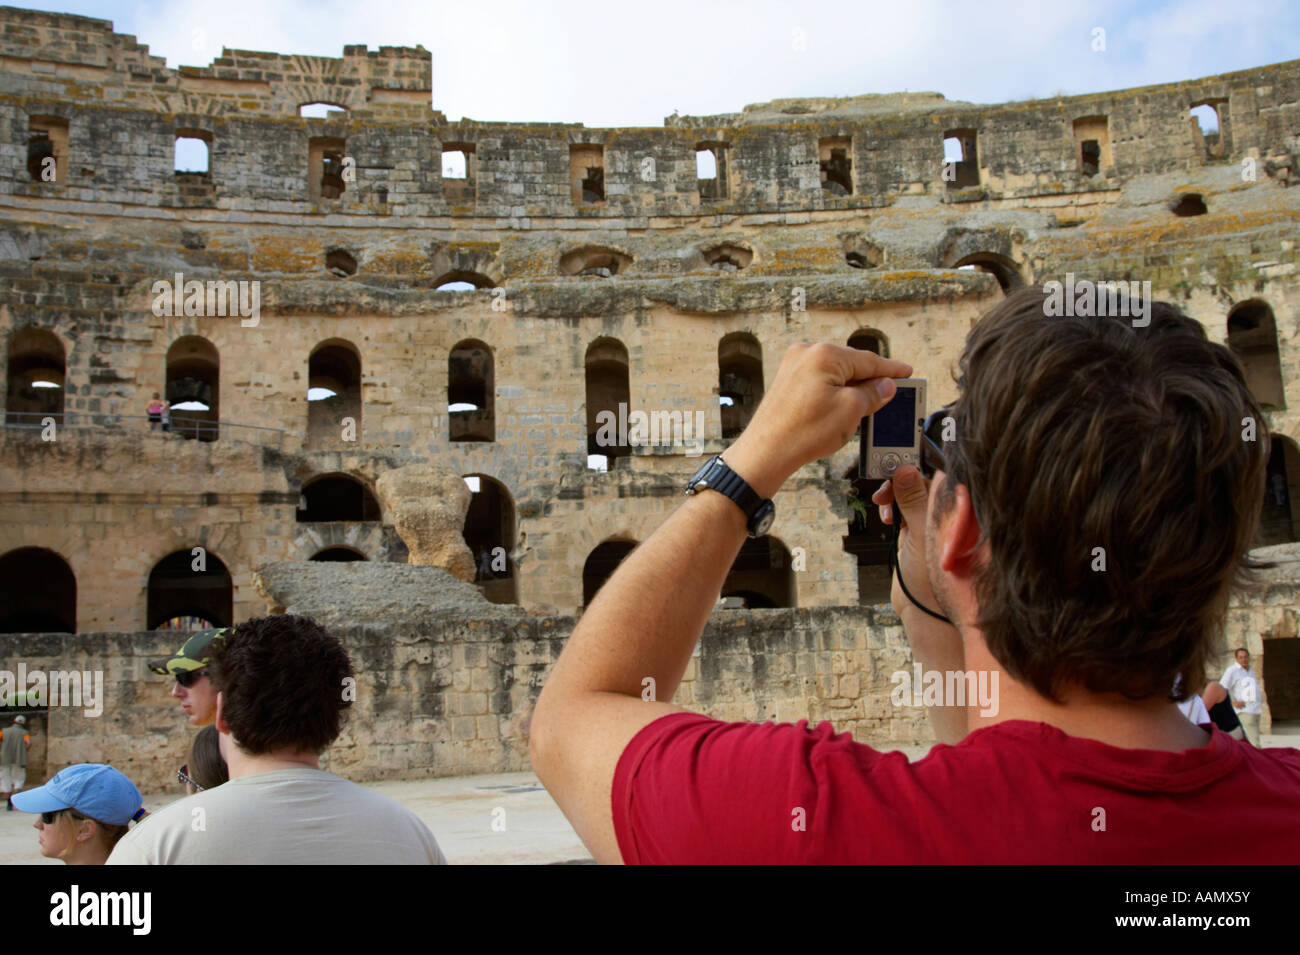 Tourisme canadien masculin taking photo de niveaux de l'arène de-chaussée de l'ancien colisée romain d'El Jem tunisie Banque D'Images